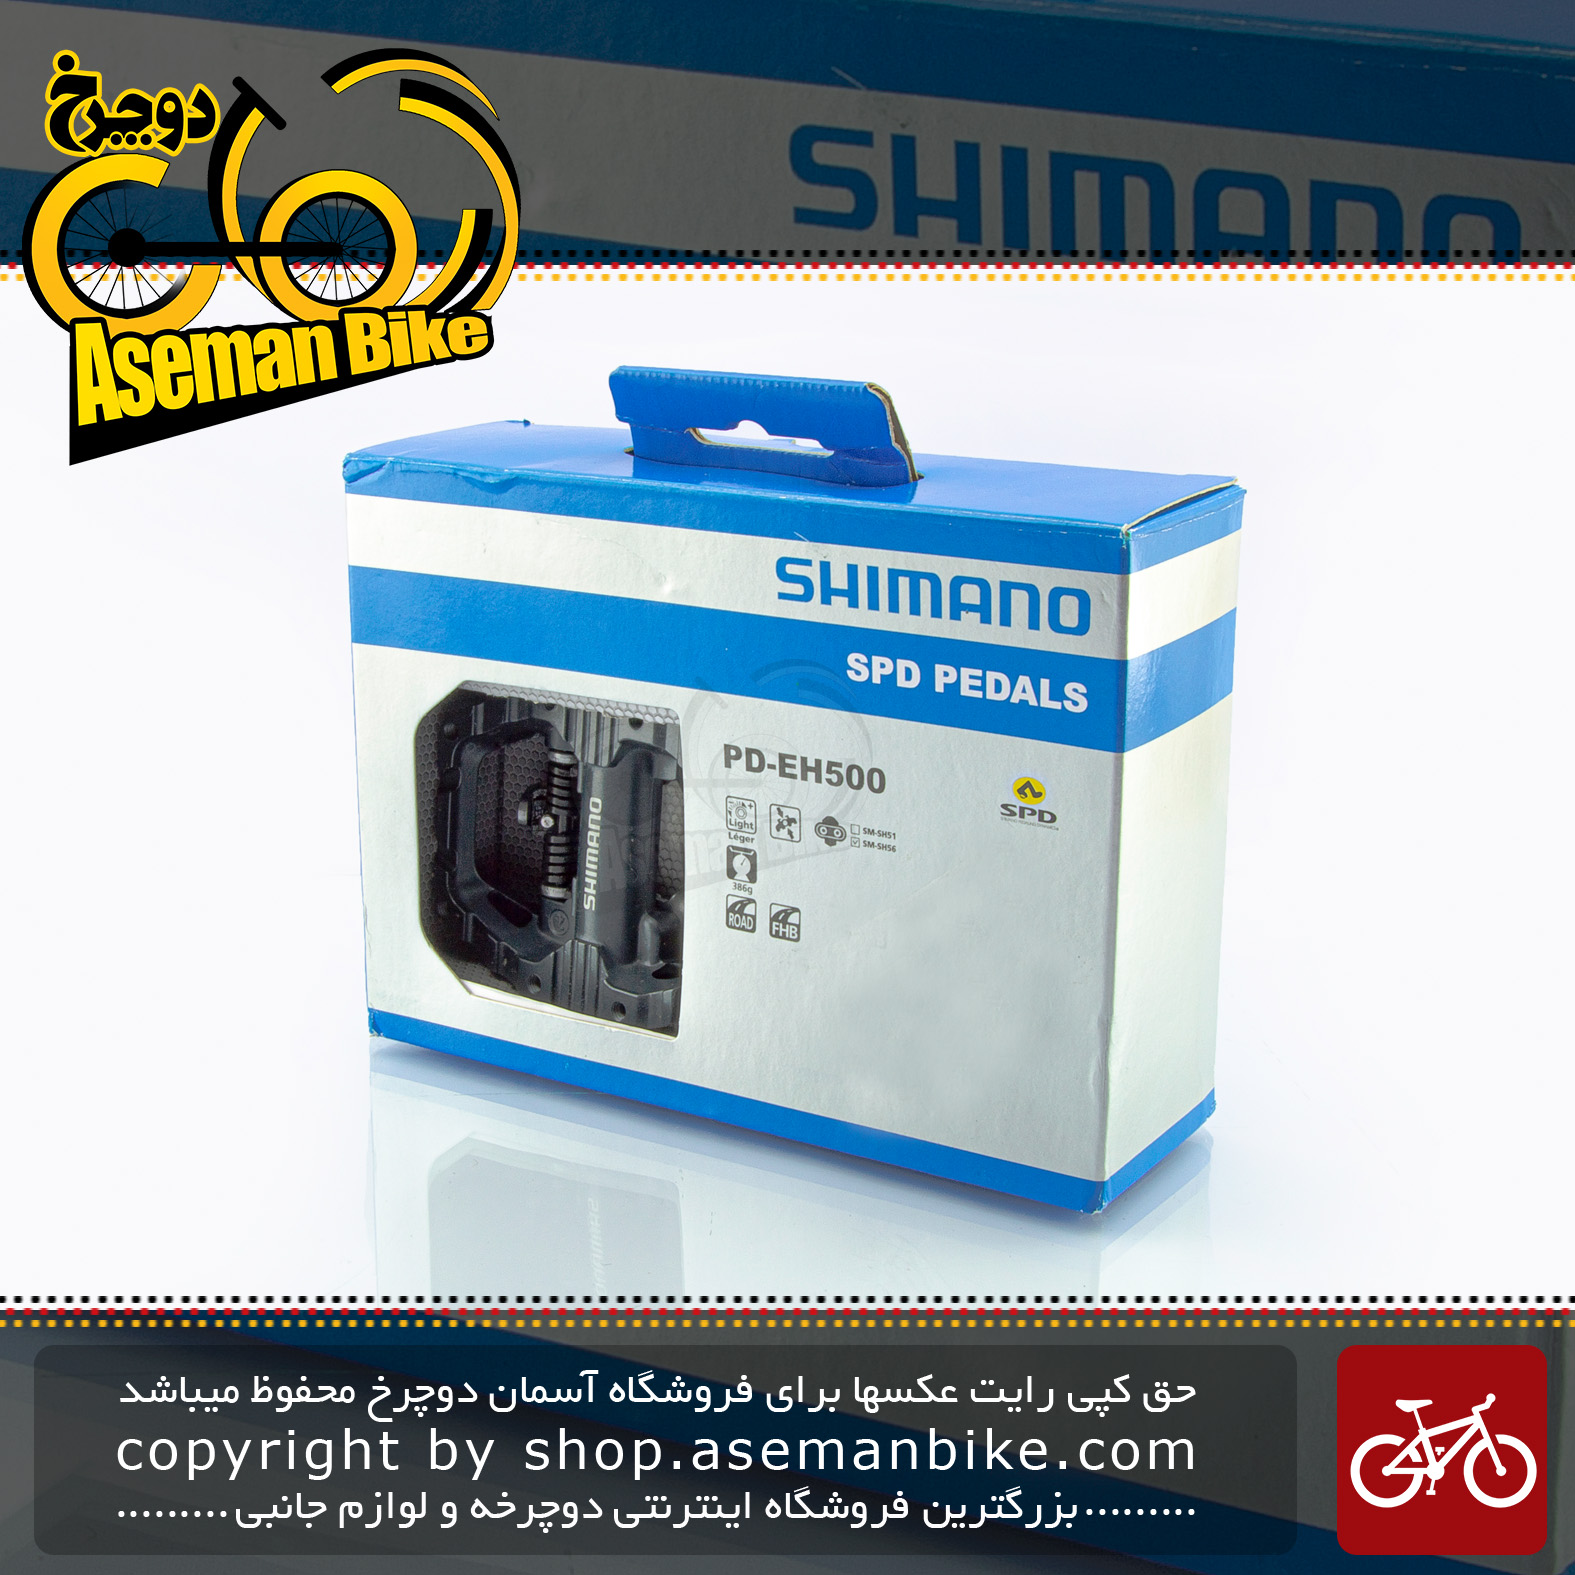 پدال دوچرخه کوهستان شهری شیمانو یک طرف لاک قفل شو یک طرف عادی میخ دارمدل ای اچ 500 ساخت مالزی Shimano Bicycle Pedal Lock PD-EH500 